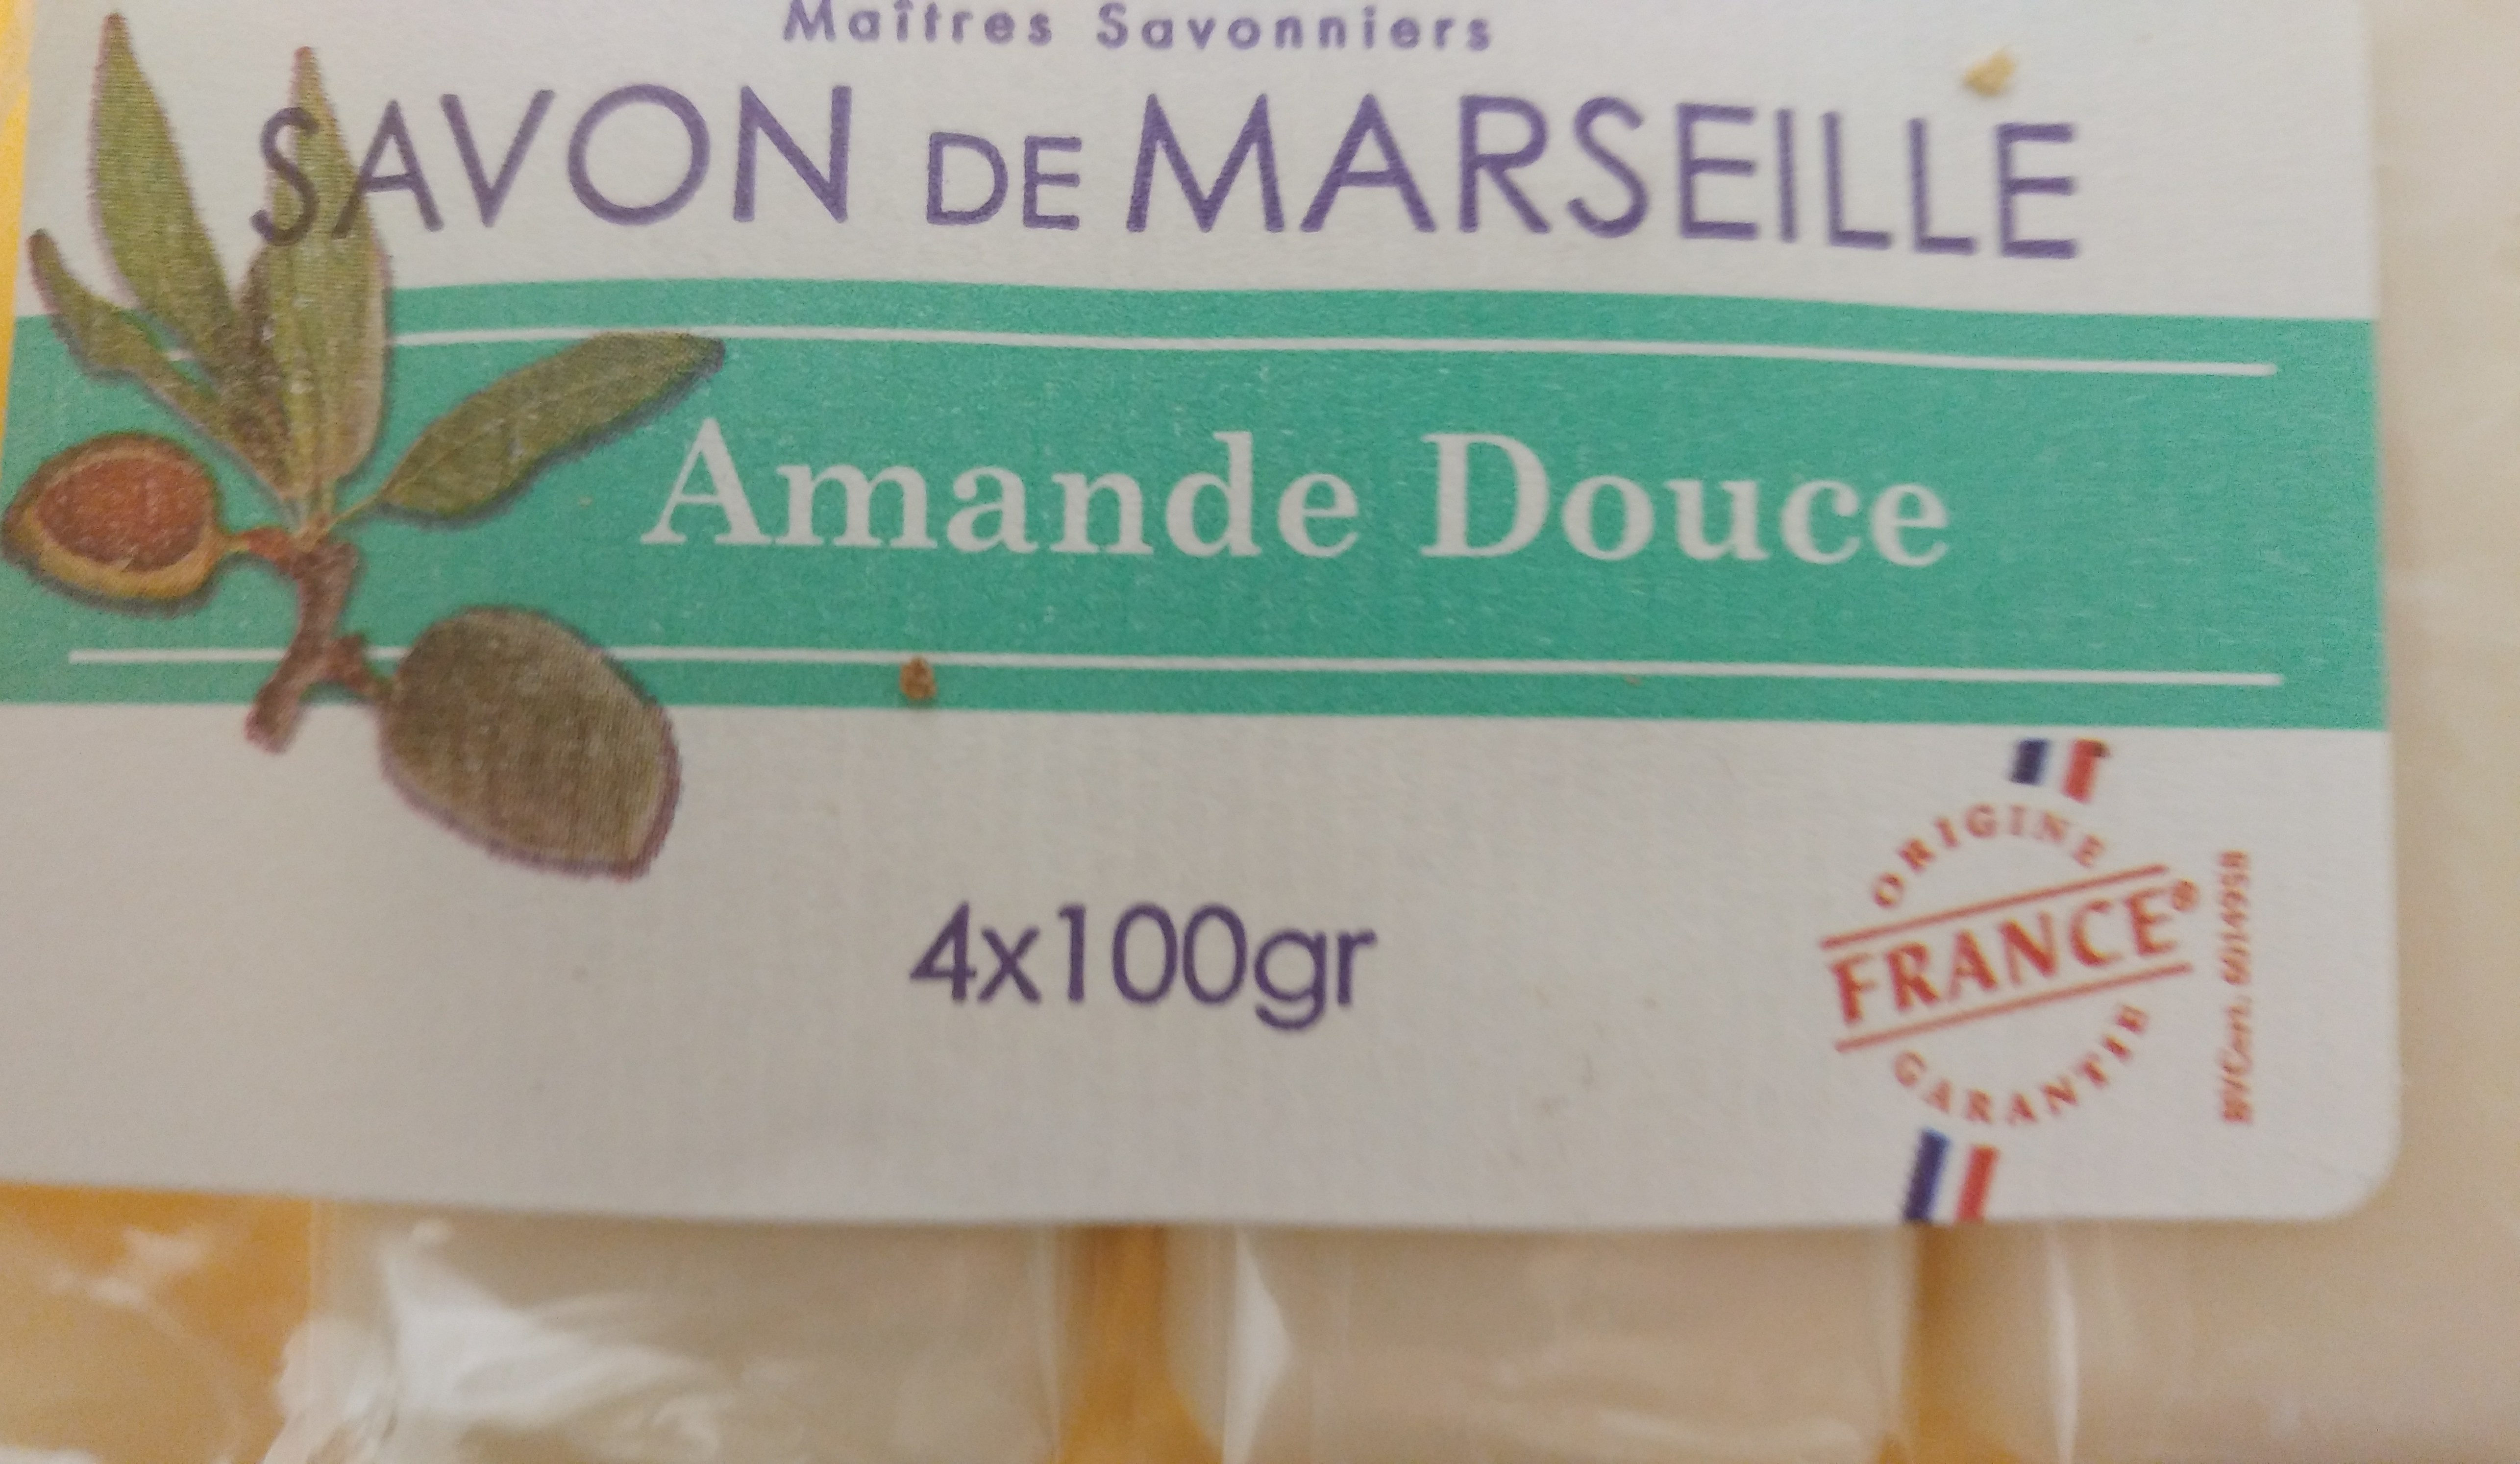 Savon de Marseille Amande Douce - Product - fr